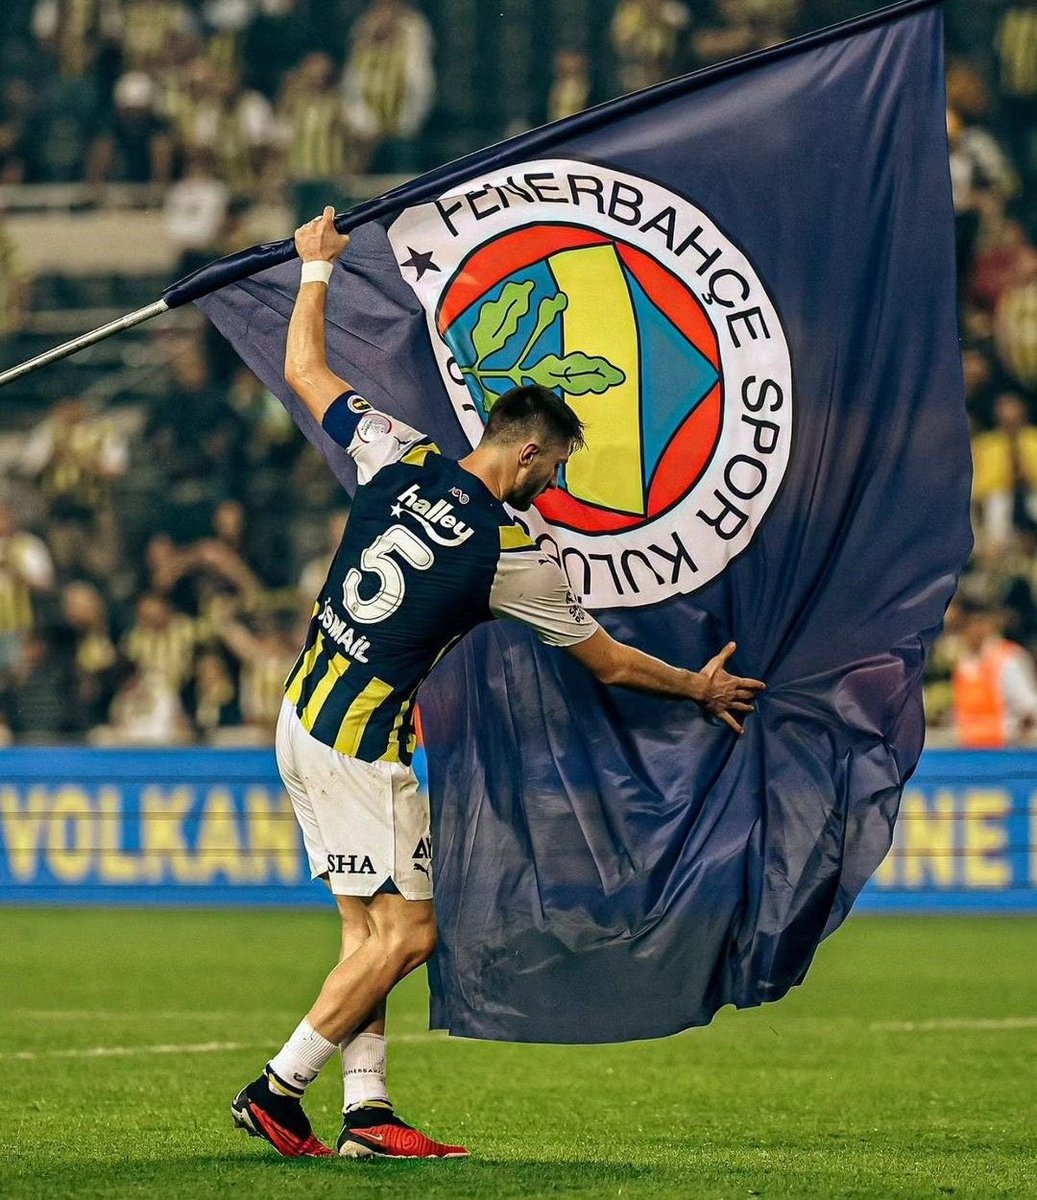 Büyükleri saymayı, çocuklara gülmeyi ve Fenerbahçeyi daha çok sevmeyi unutmayın.

Hayırlı bayramlar gençler 🎀